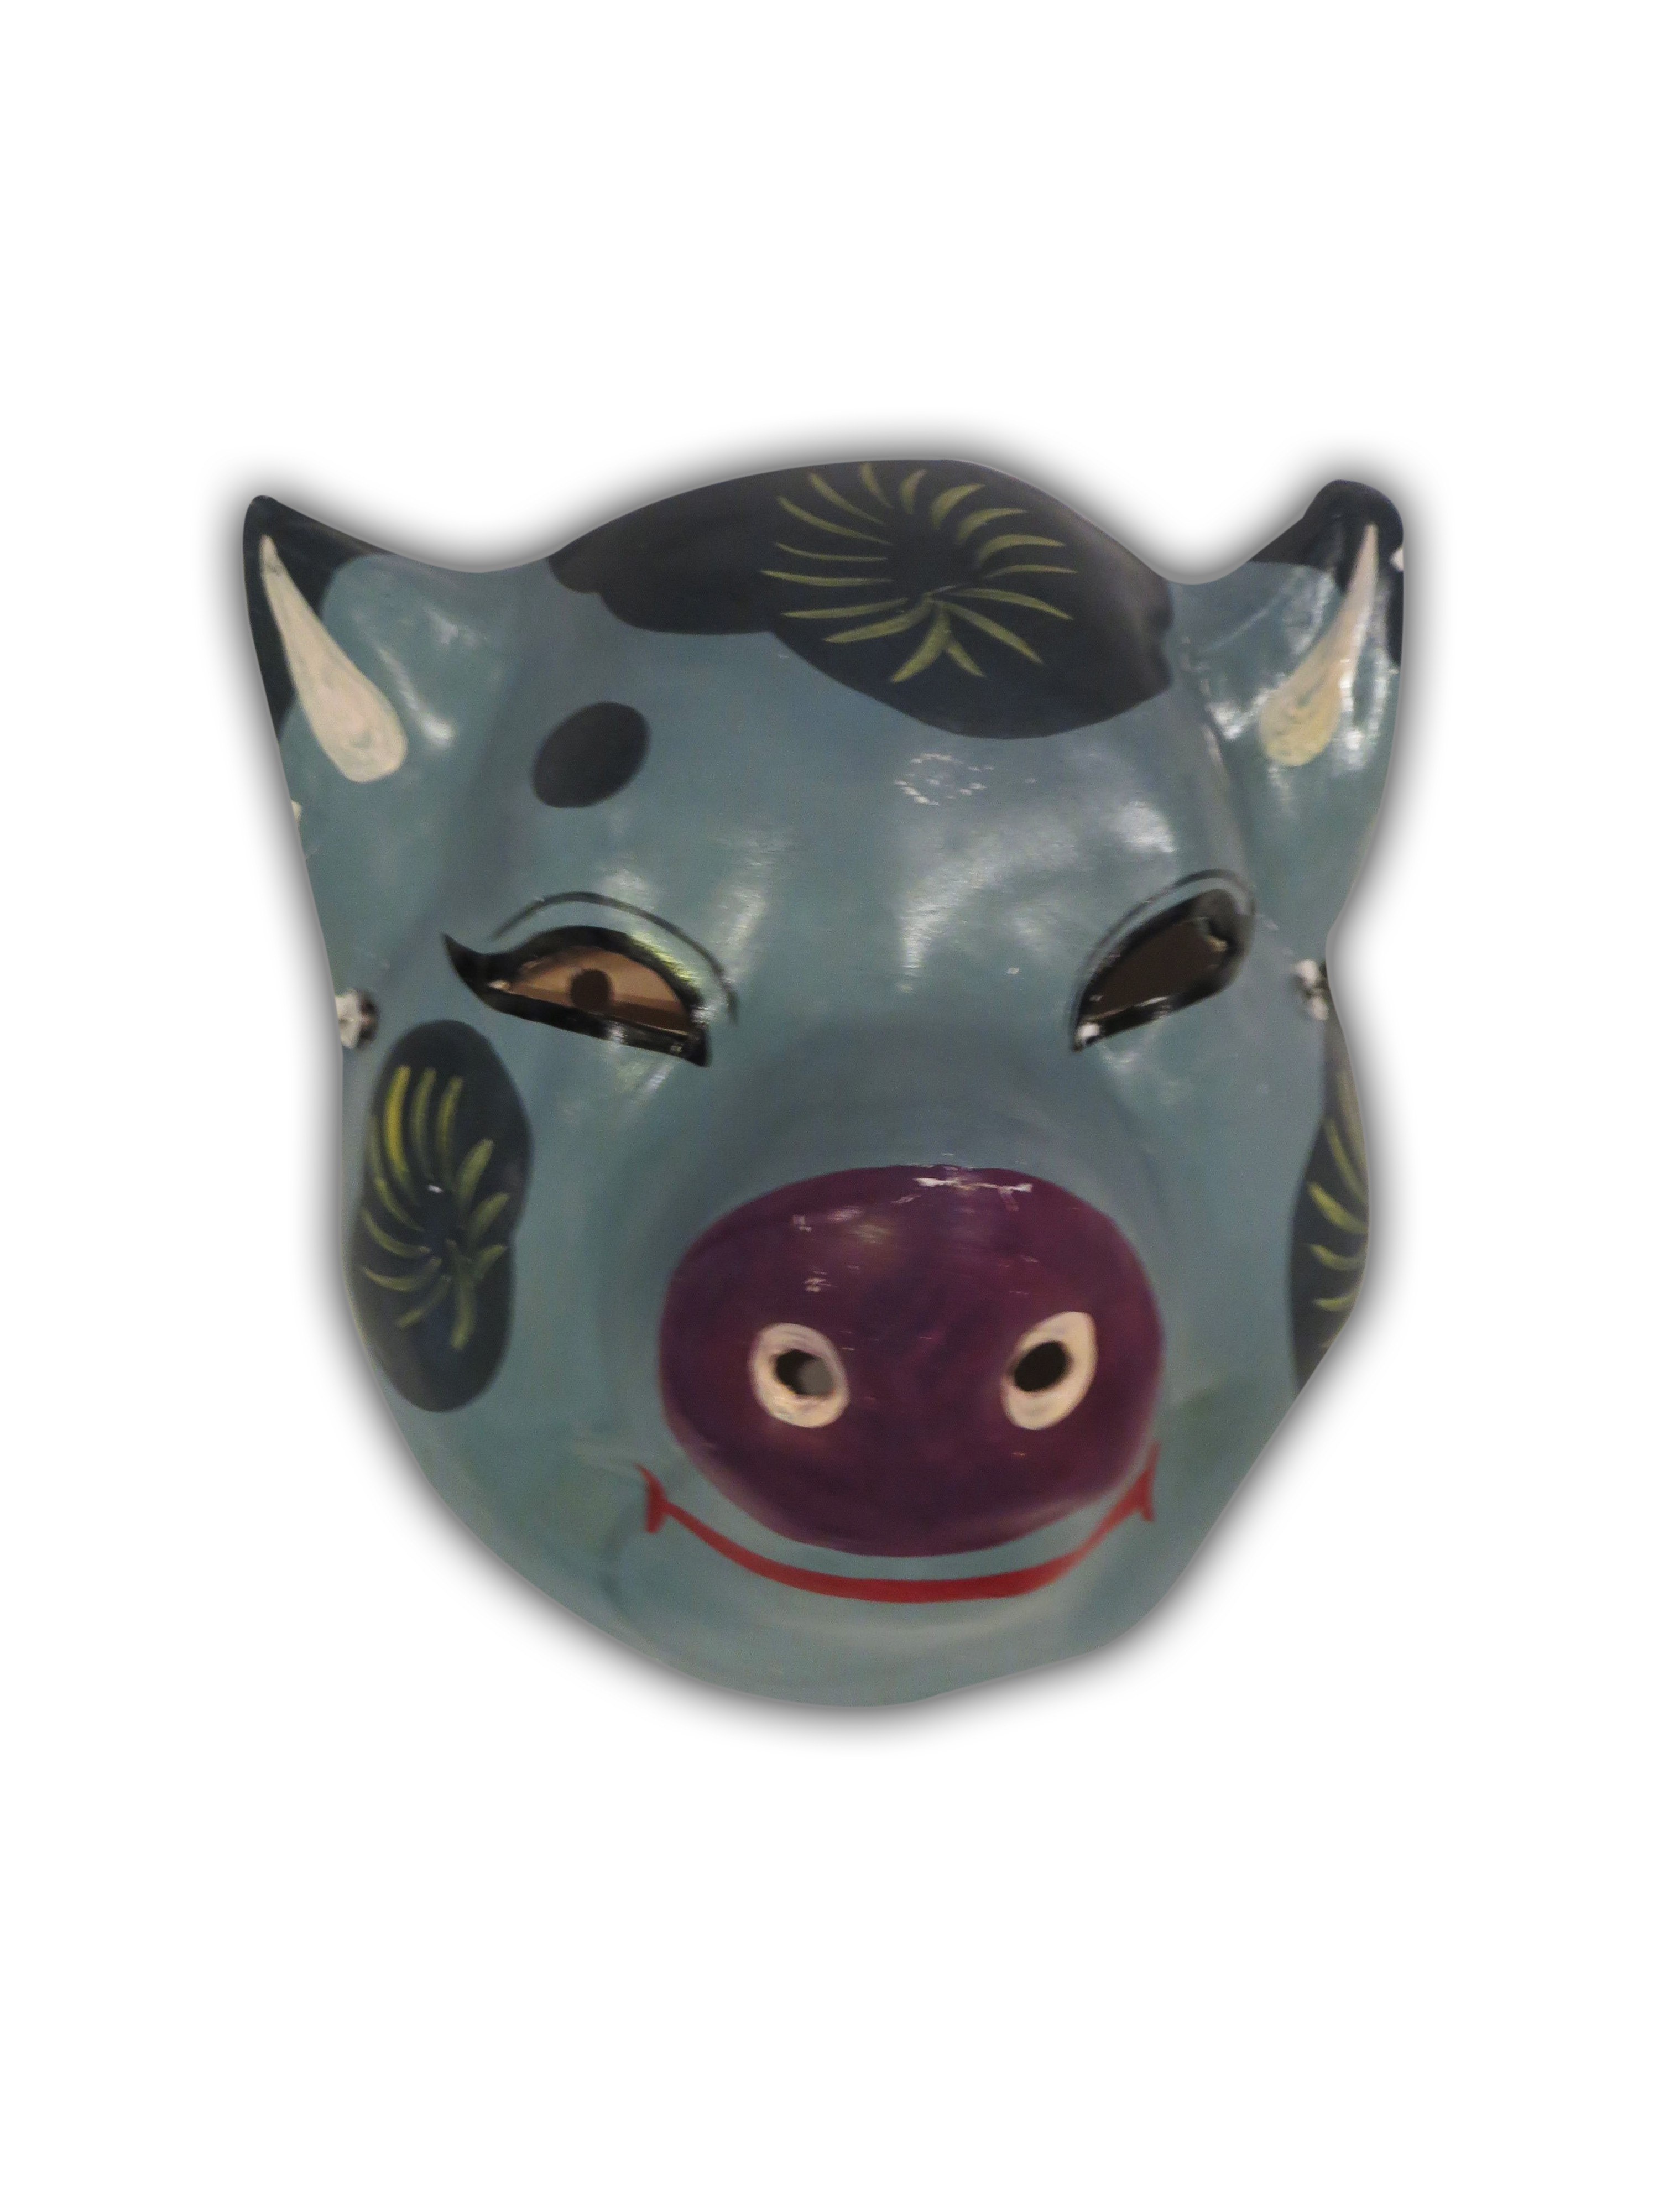 Canadian Society for Asian Arts | Asian Zodiac Masks3000 x 4000